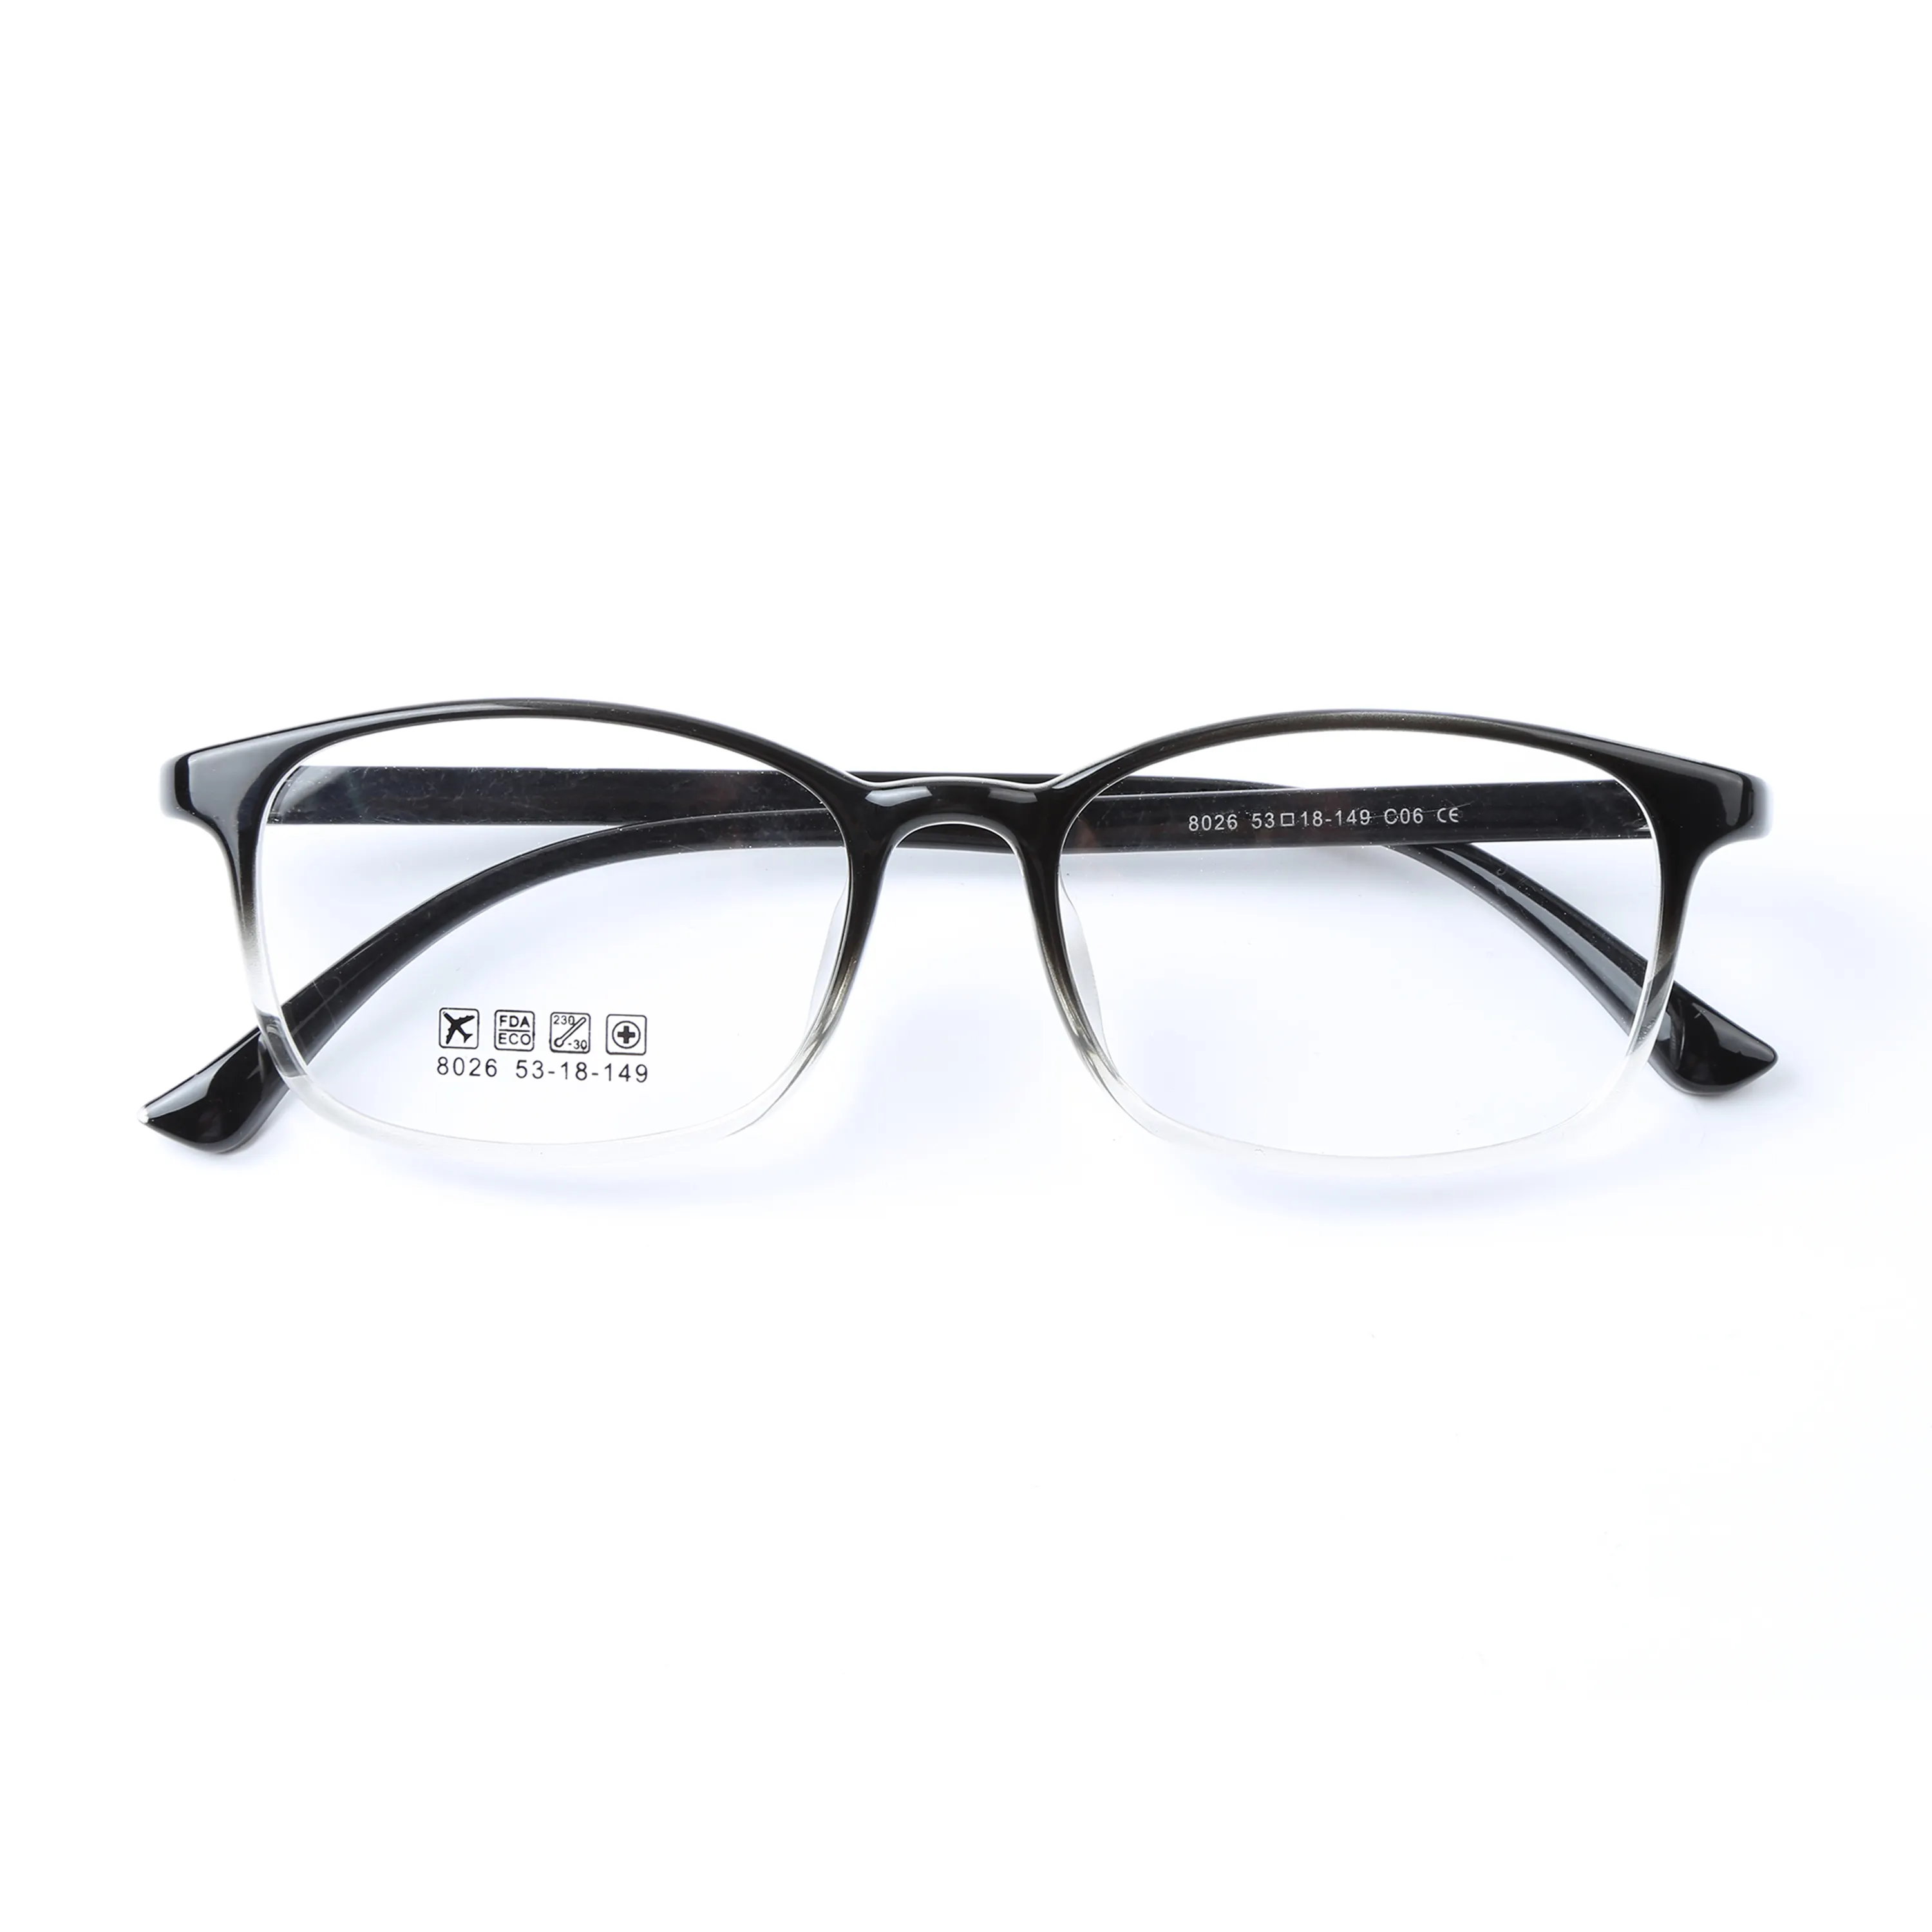 Baru Kedatangan Kualitas Baik Bingkai Kacamata Bahasa Italia Inovatif Tr90 Bingkai Eyewear Wanita Optik Kacamata Desain Anda Sendiri